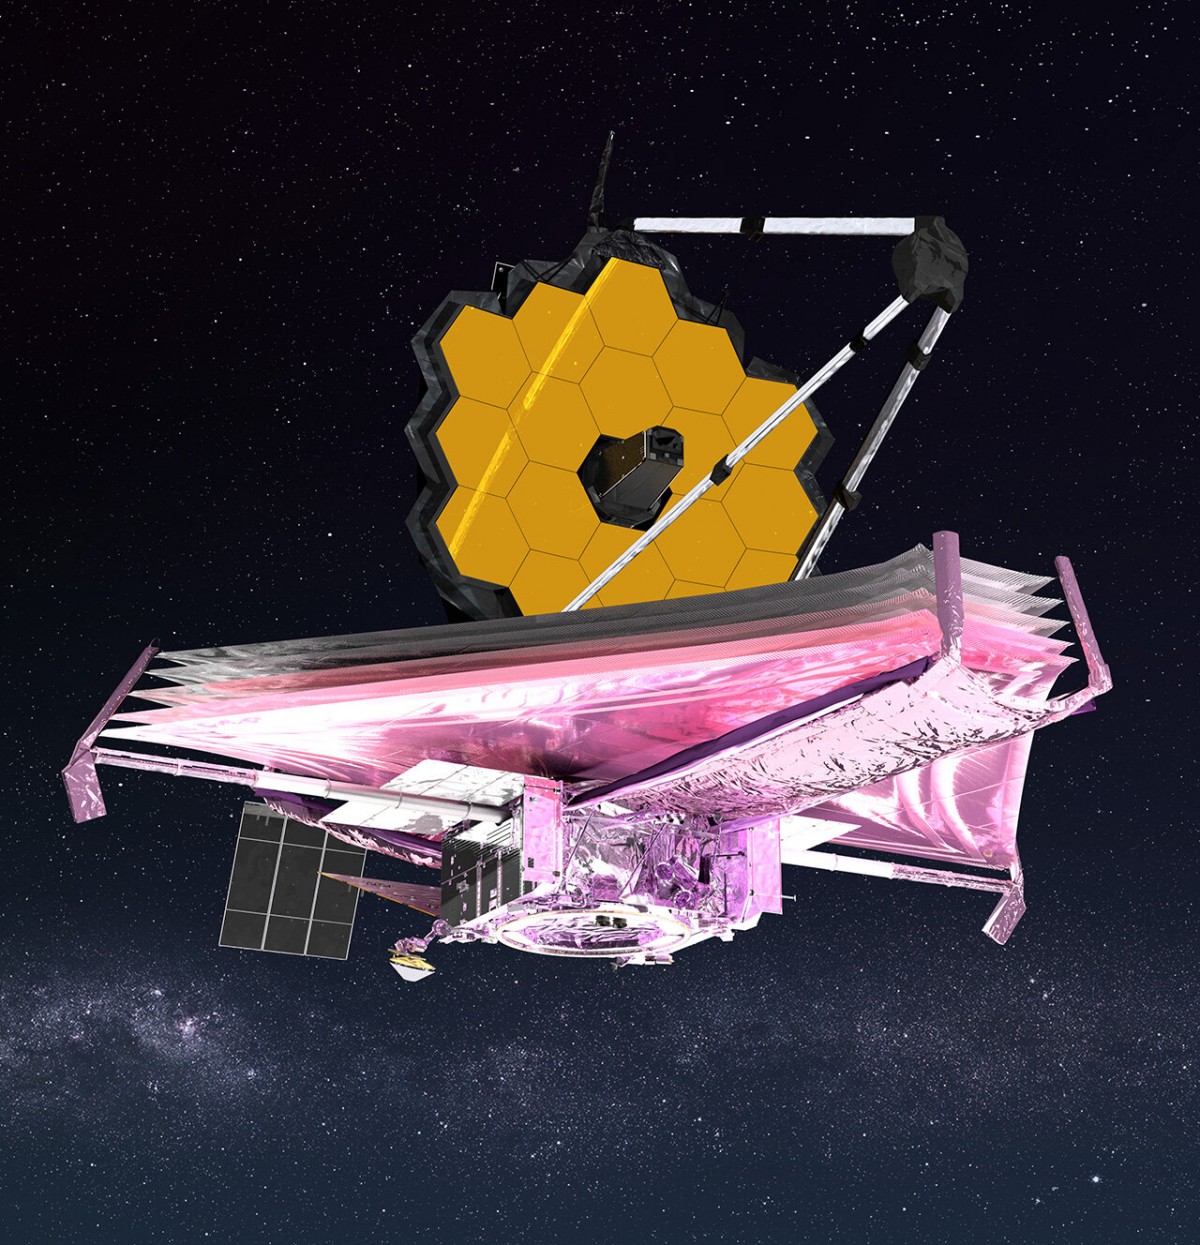 Webb Uzay Teleskobu, Güneş Sistemi Asteroit Kuşağı'nda İlk Defa Su Tespit Etti